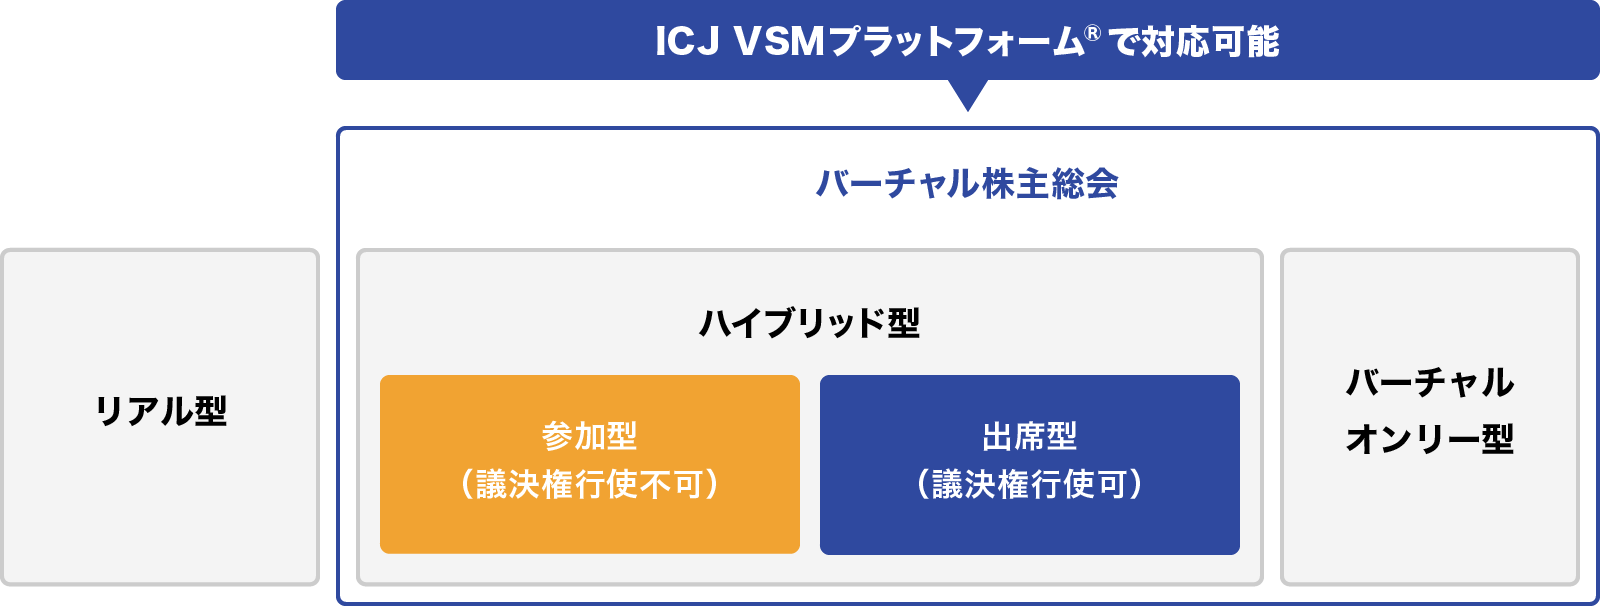 ICJ VSMプラットフォーム®の対応可能な範囲